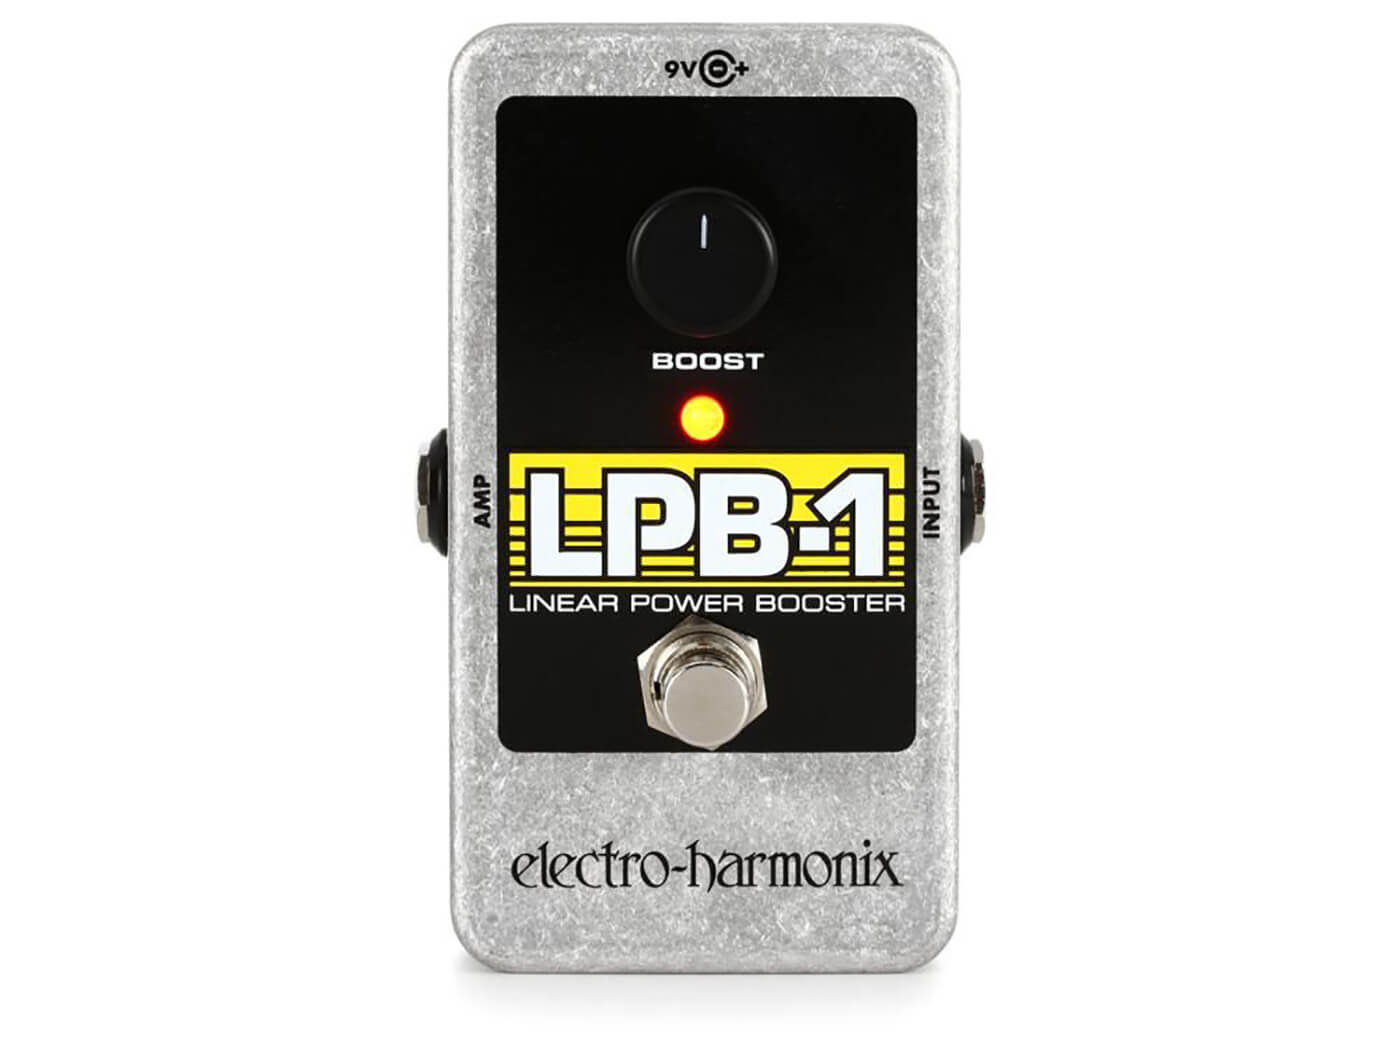 5. Electro-Harmonix LPB-1